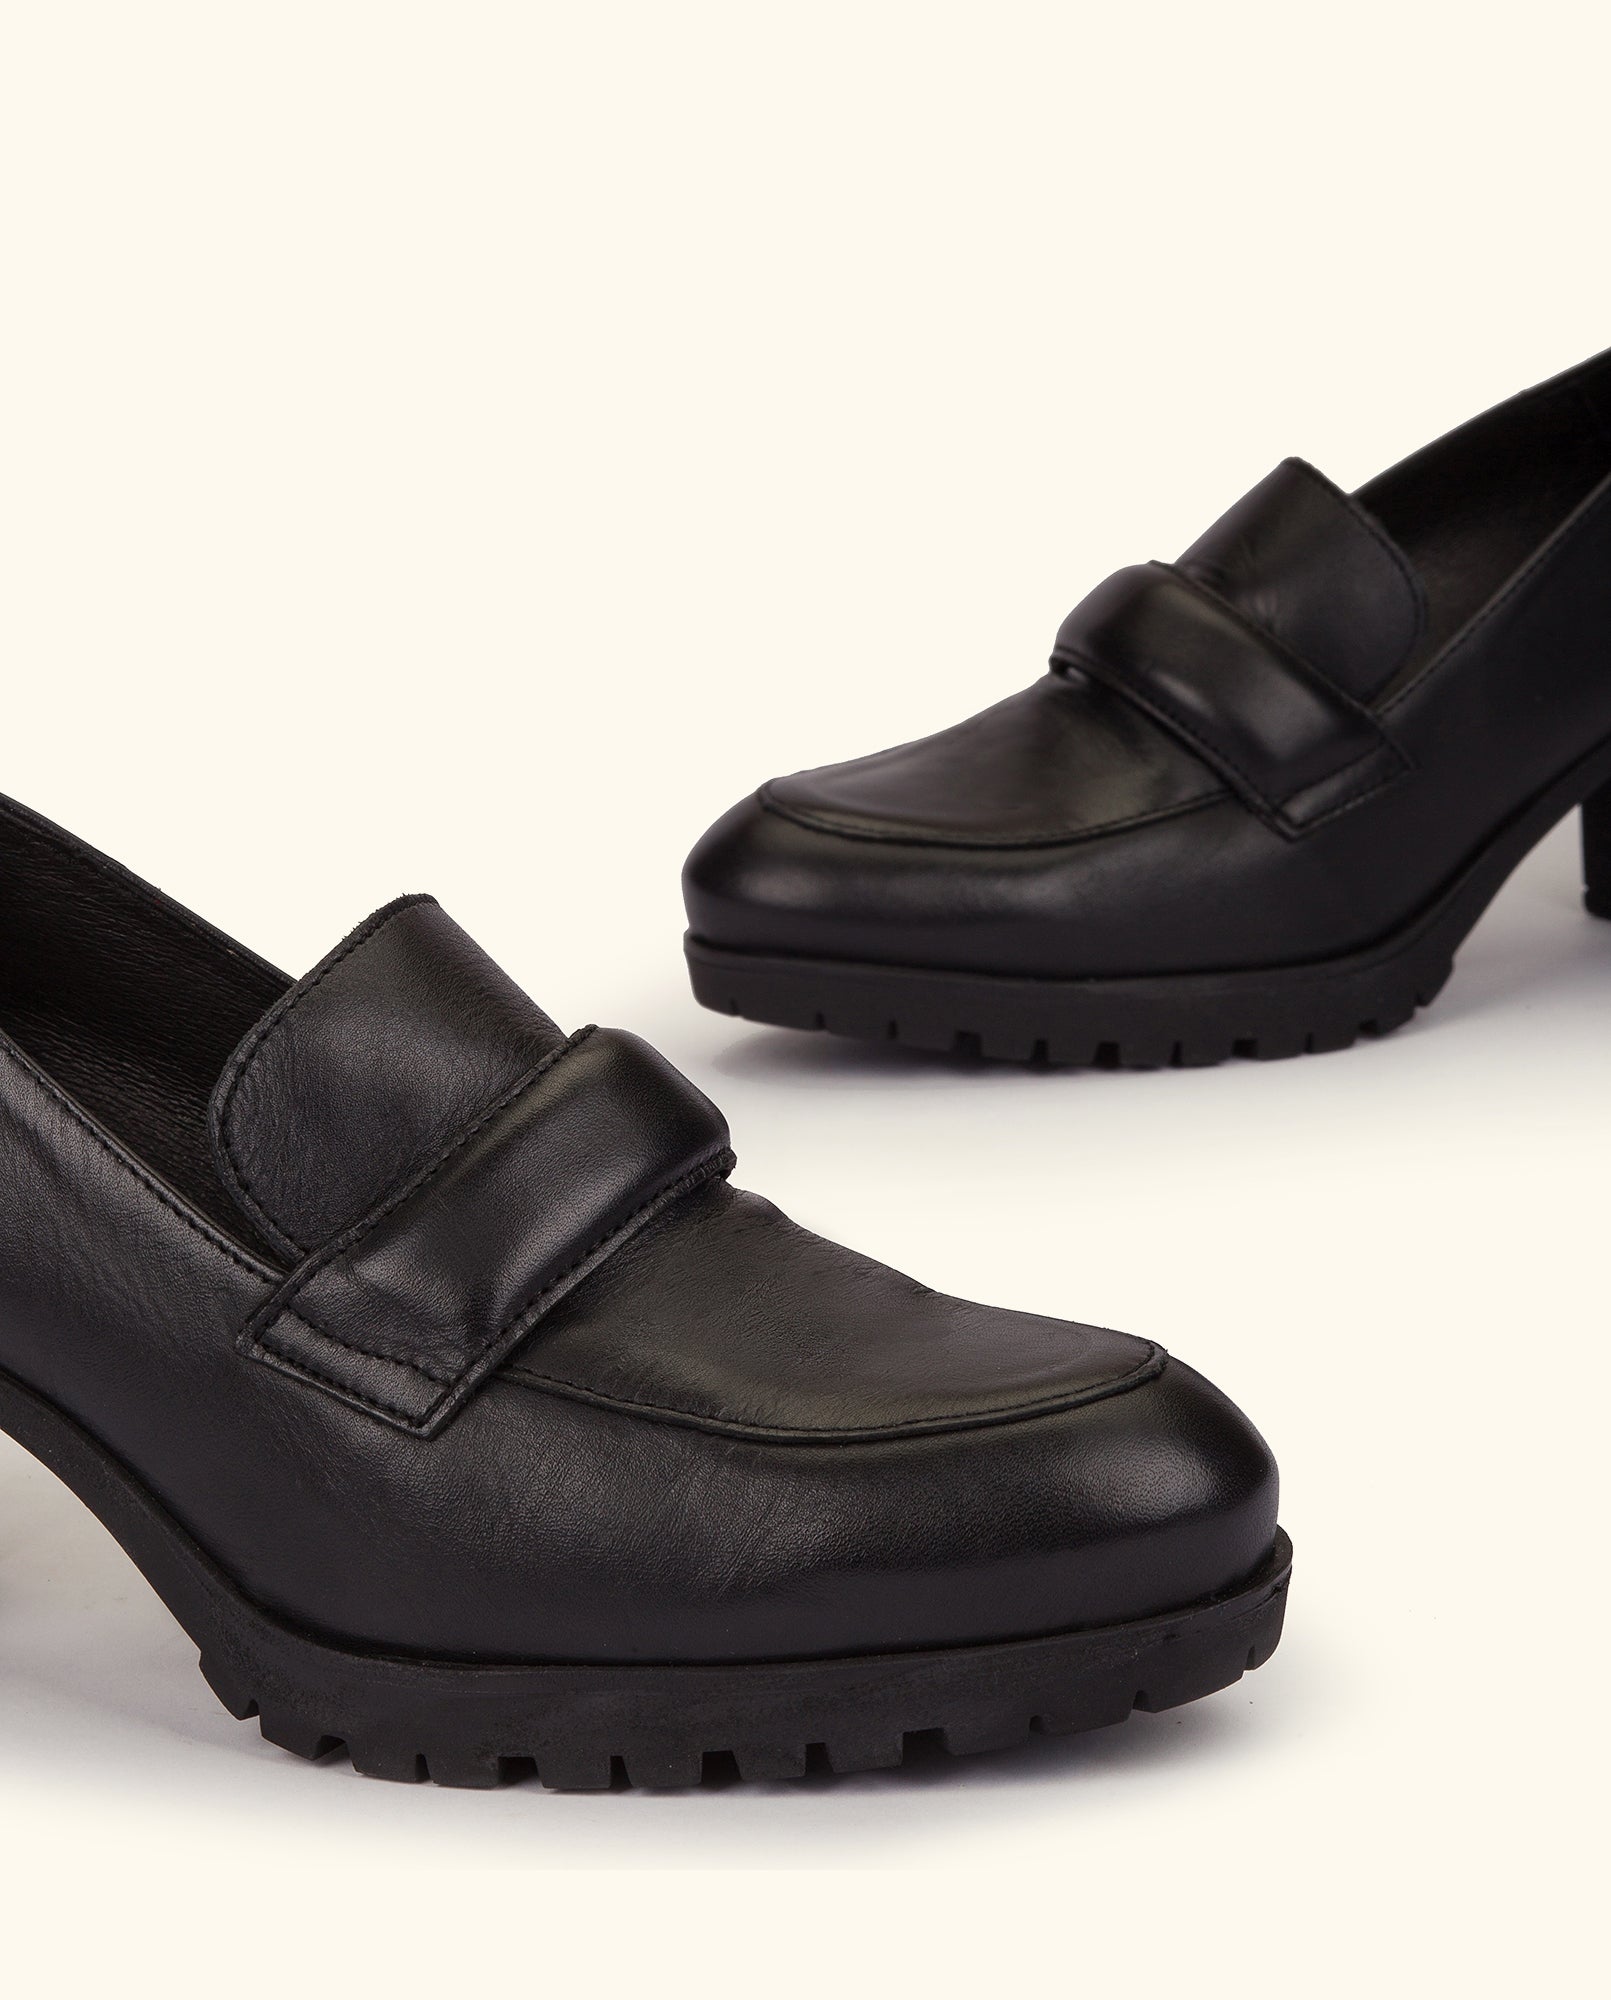 Heeled shoe PRAGA-013 black